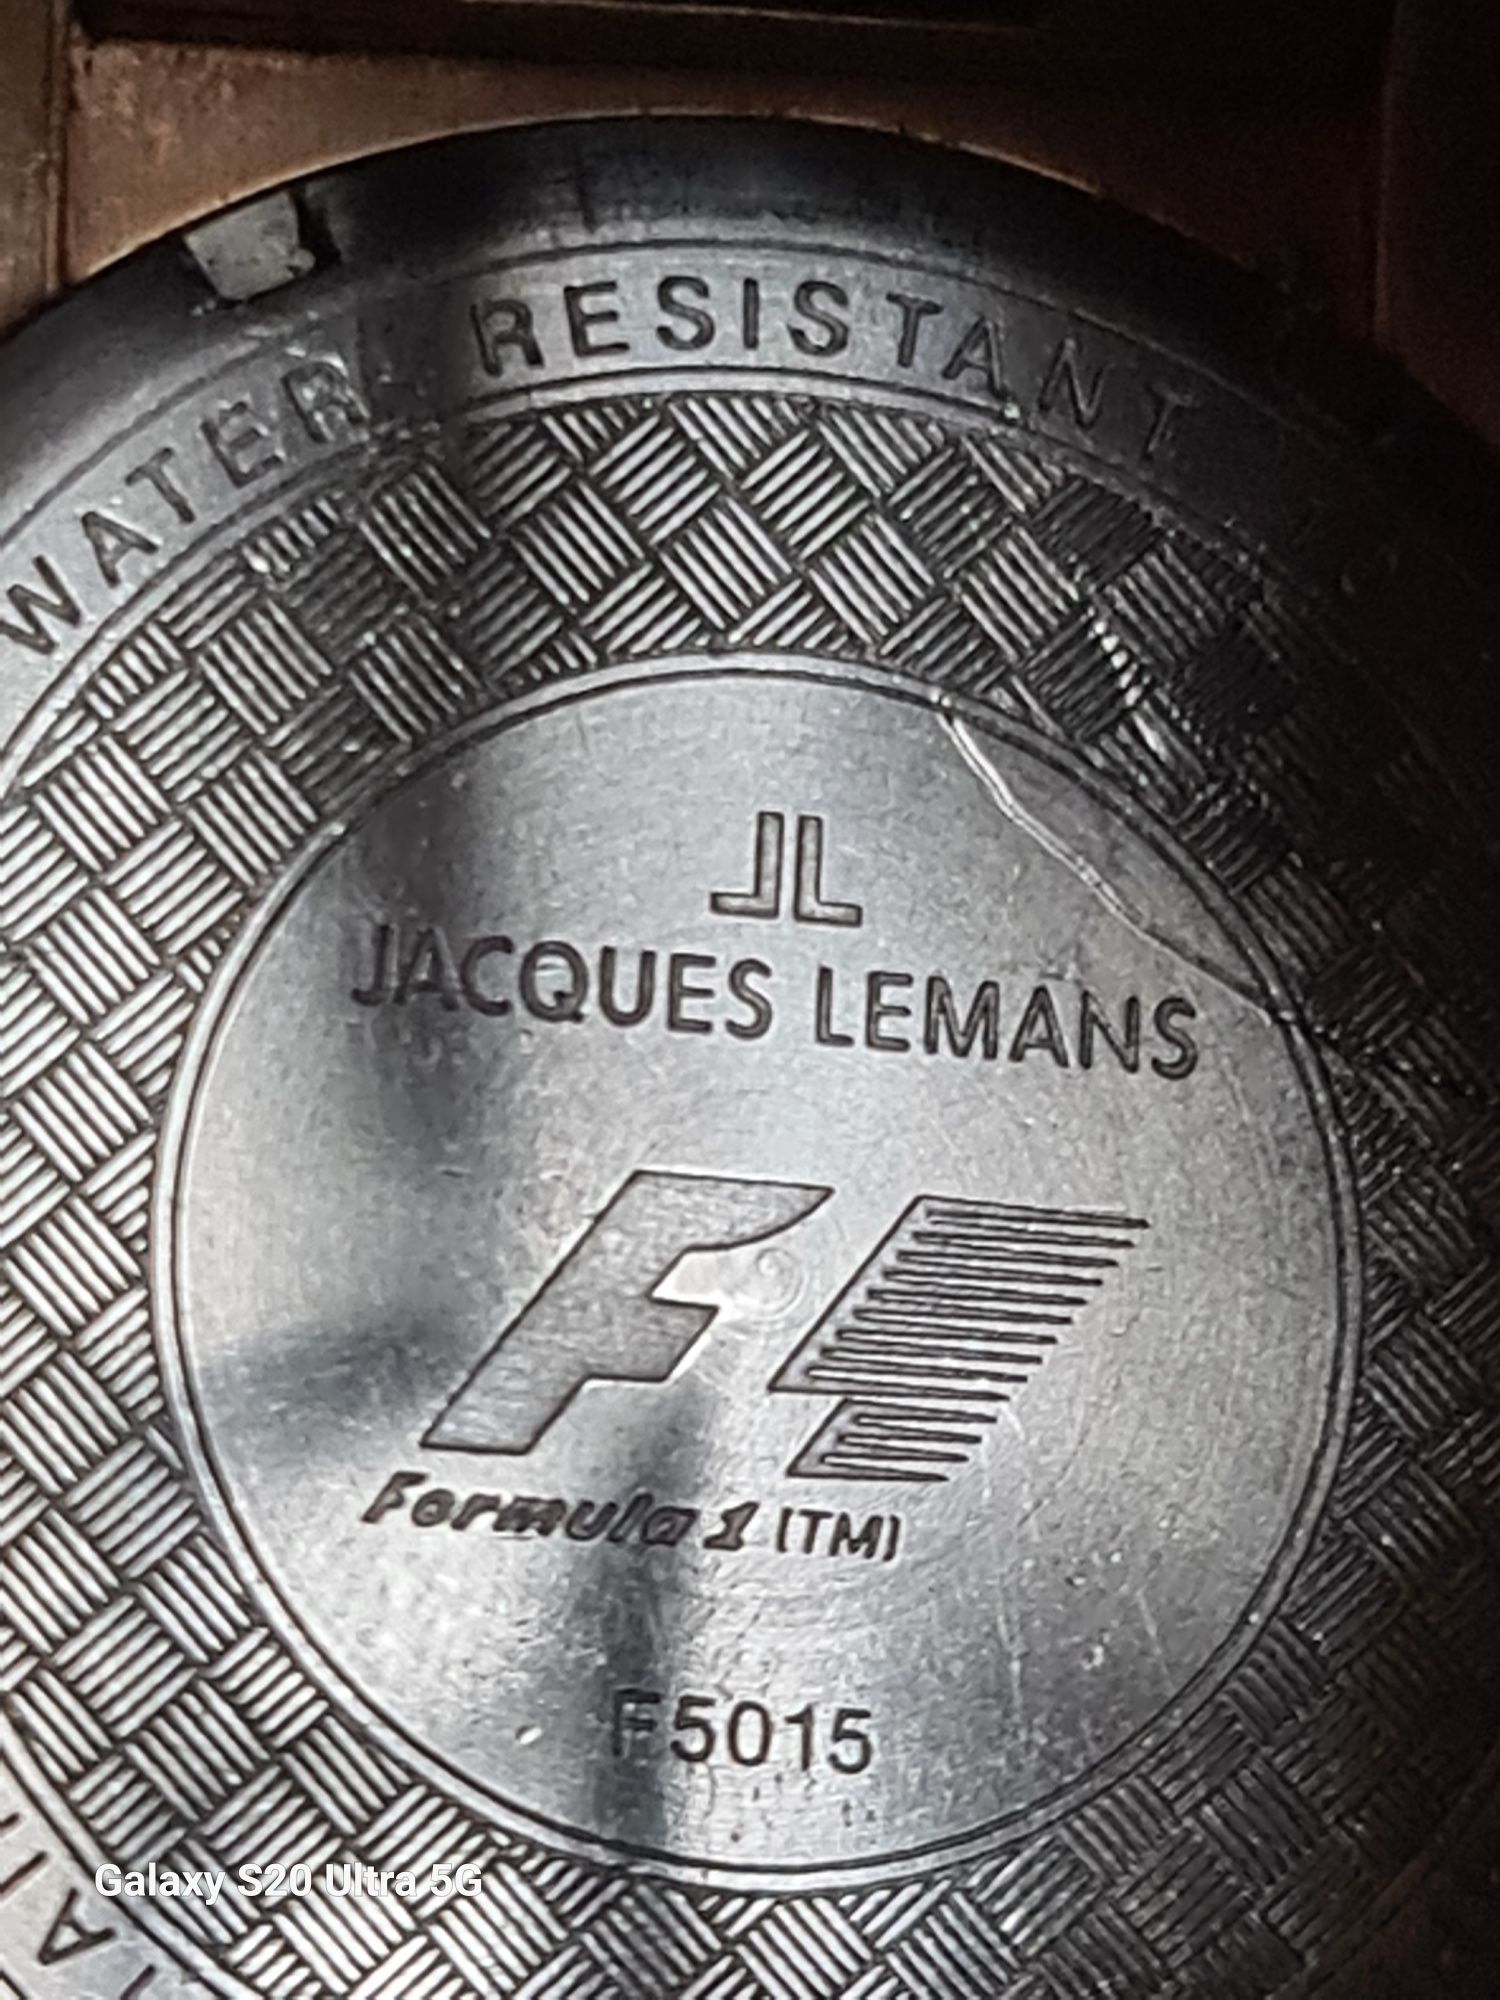 Relógio Jacques Lemans F1 (F5015) "LÊR DESCRIÇÃO"